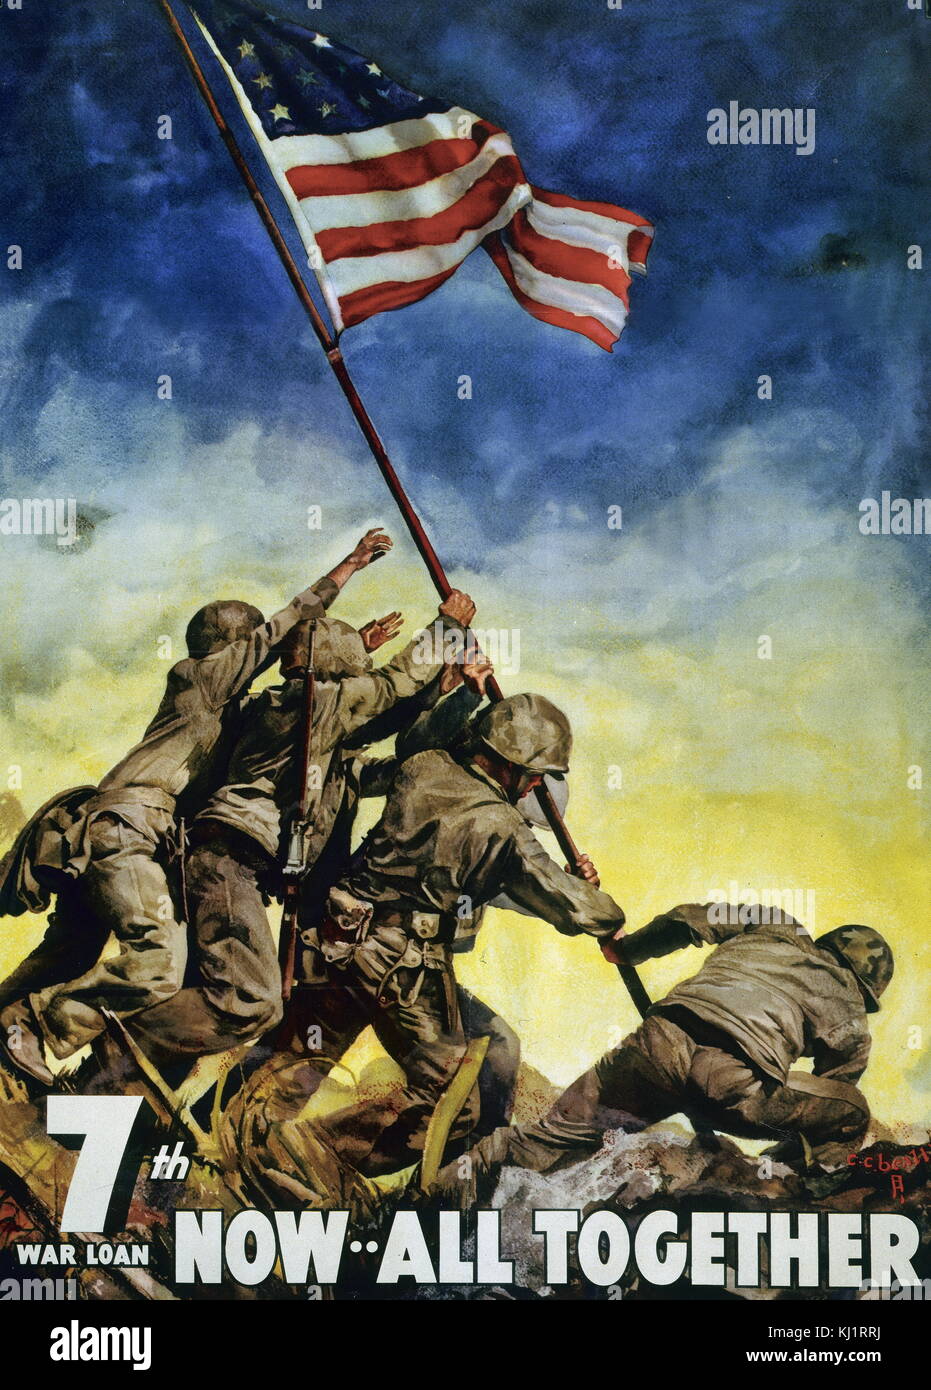 La Seconde Guerre mondiale affiche de propagande commémorative, montrant des Marines américains sensibilisation drapeau à Iwo Jima, au cours de l'avance sur le Japon à la guerre du Pacifique. Banque D'Images